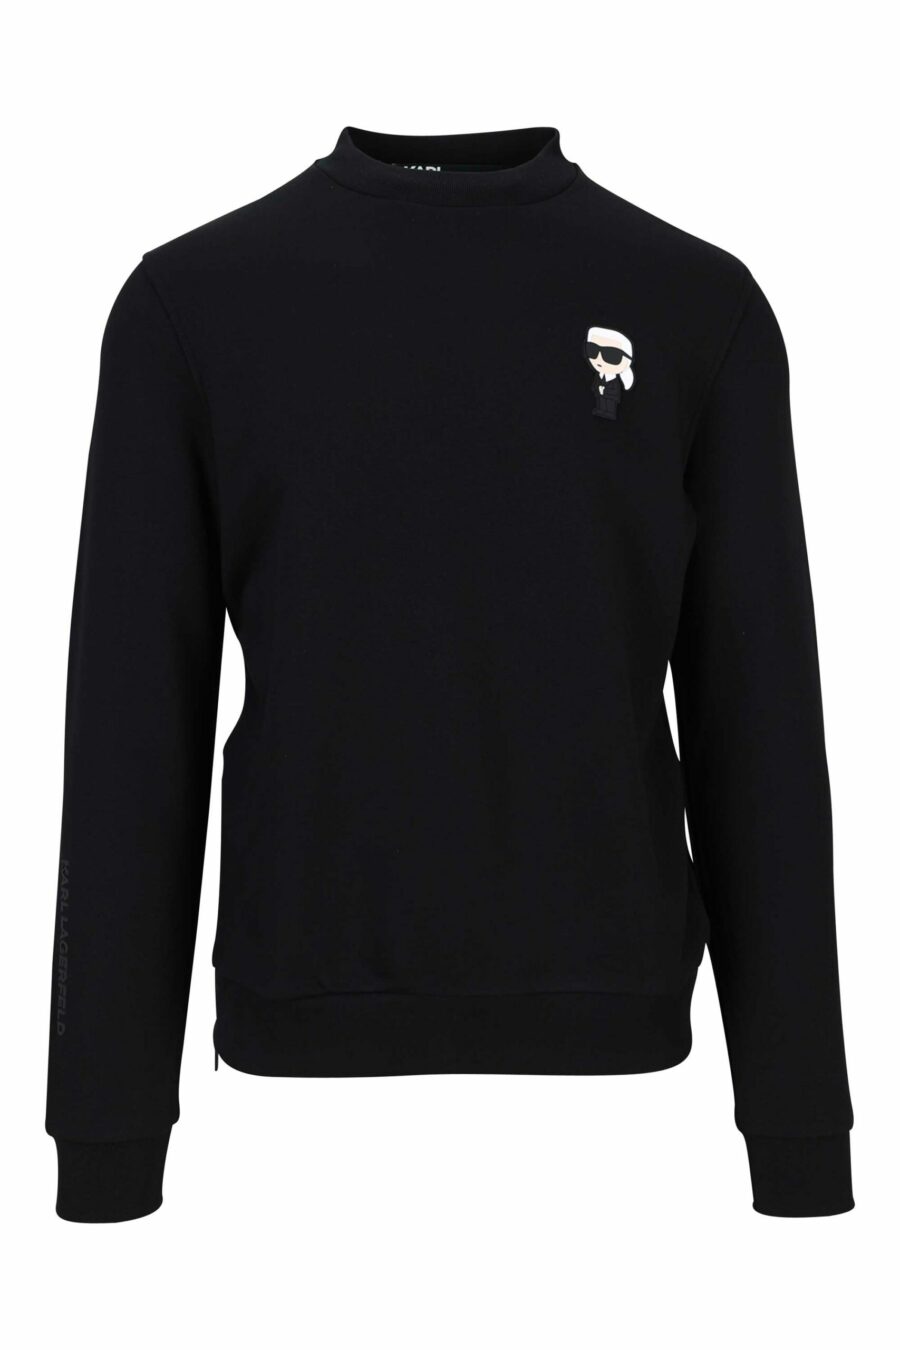 Schwarzes Sweatshirt mit gesticktem Minilogue - 4062226652995 1 skaliert